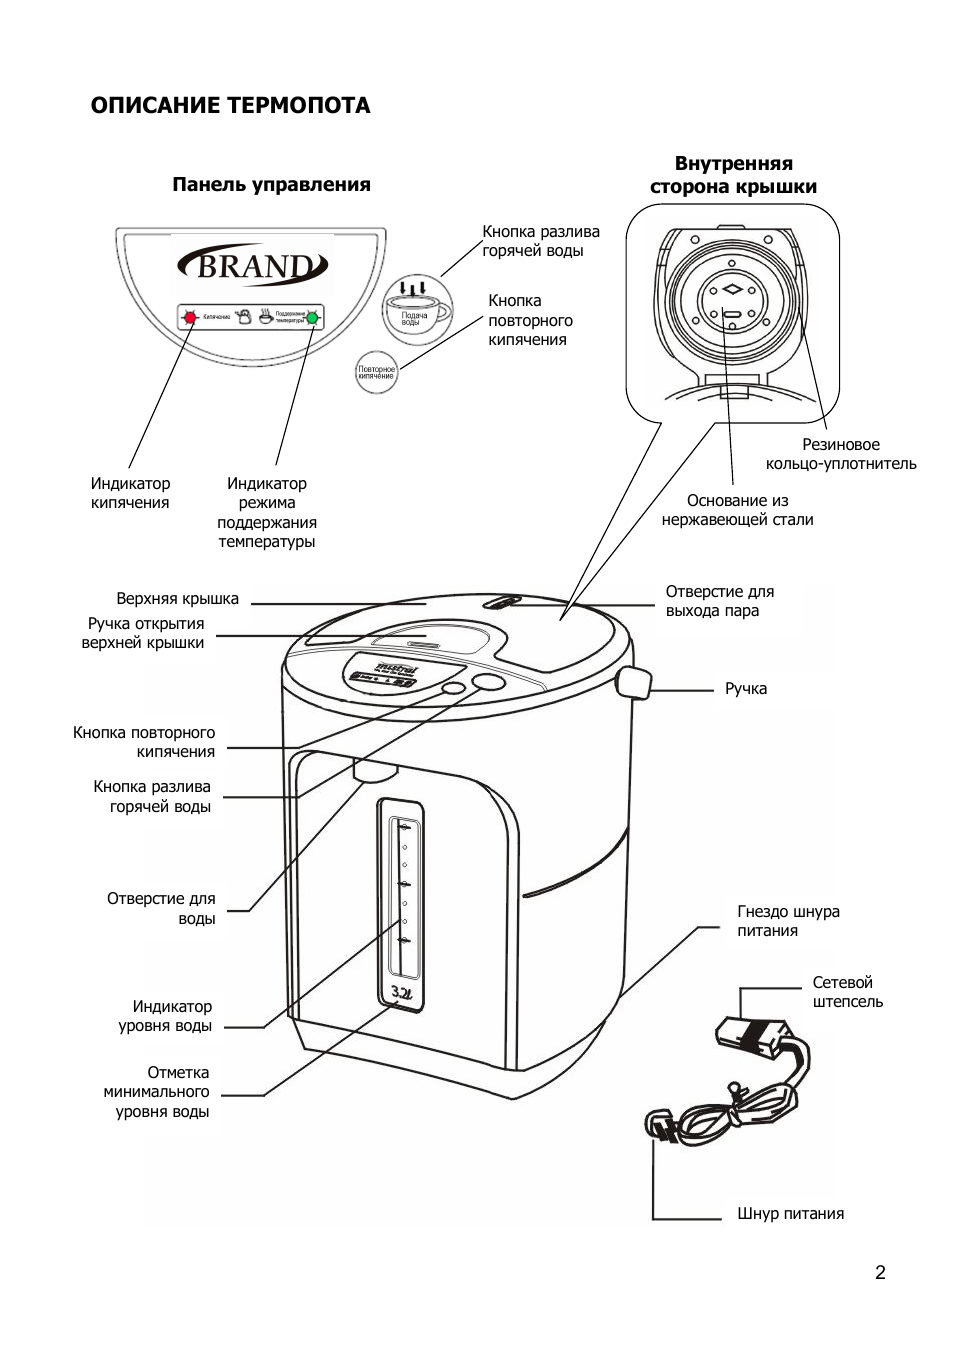 Инструкция, как правильно пользоваться термопотом